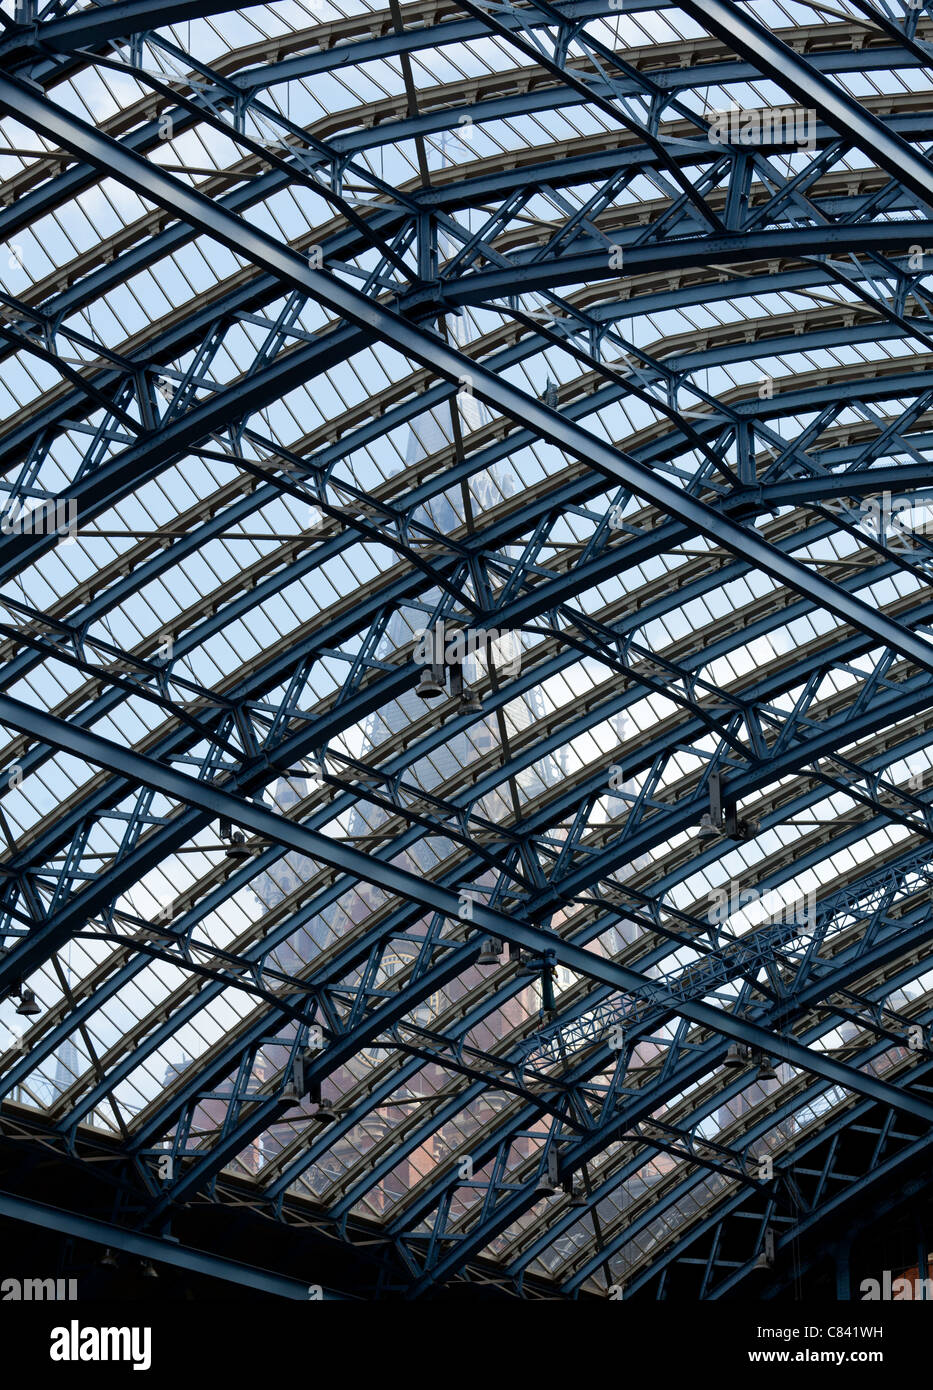 Uhrturm von St Pancras station durch das reich verzierte Glasdach der Eingangshalle des Gebäudes sichtbar Stockfoto